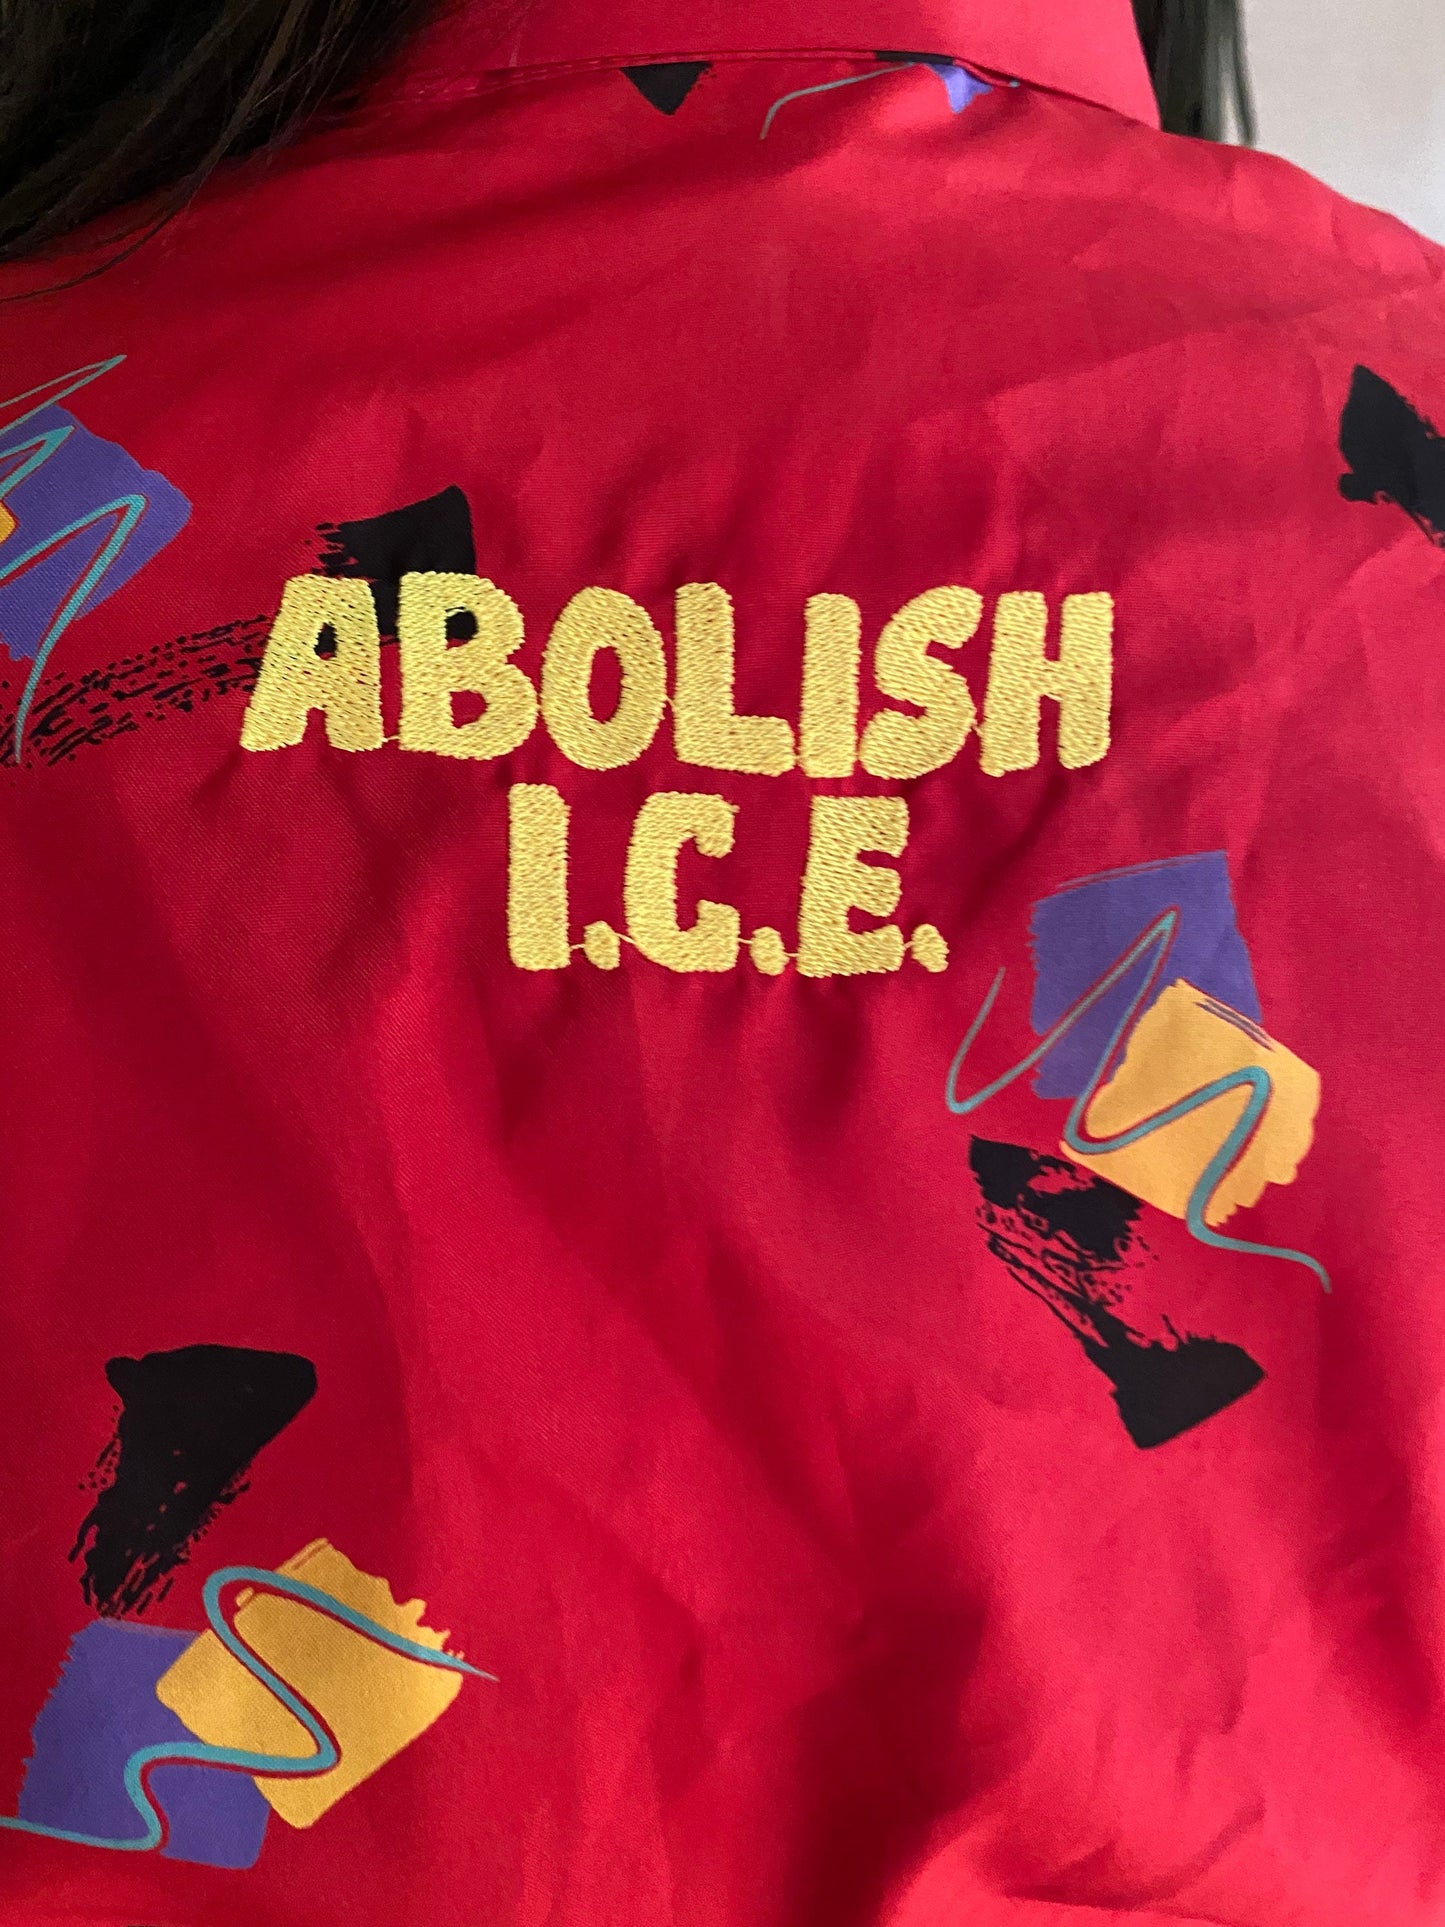 Abolish ICE Dress